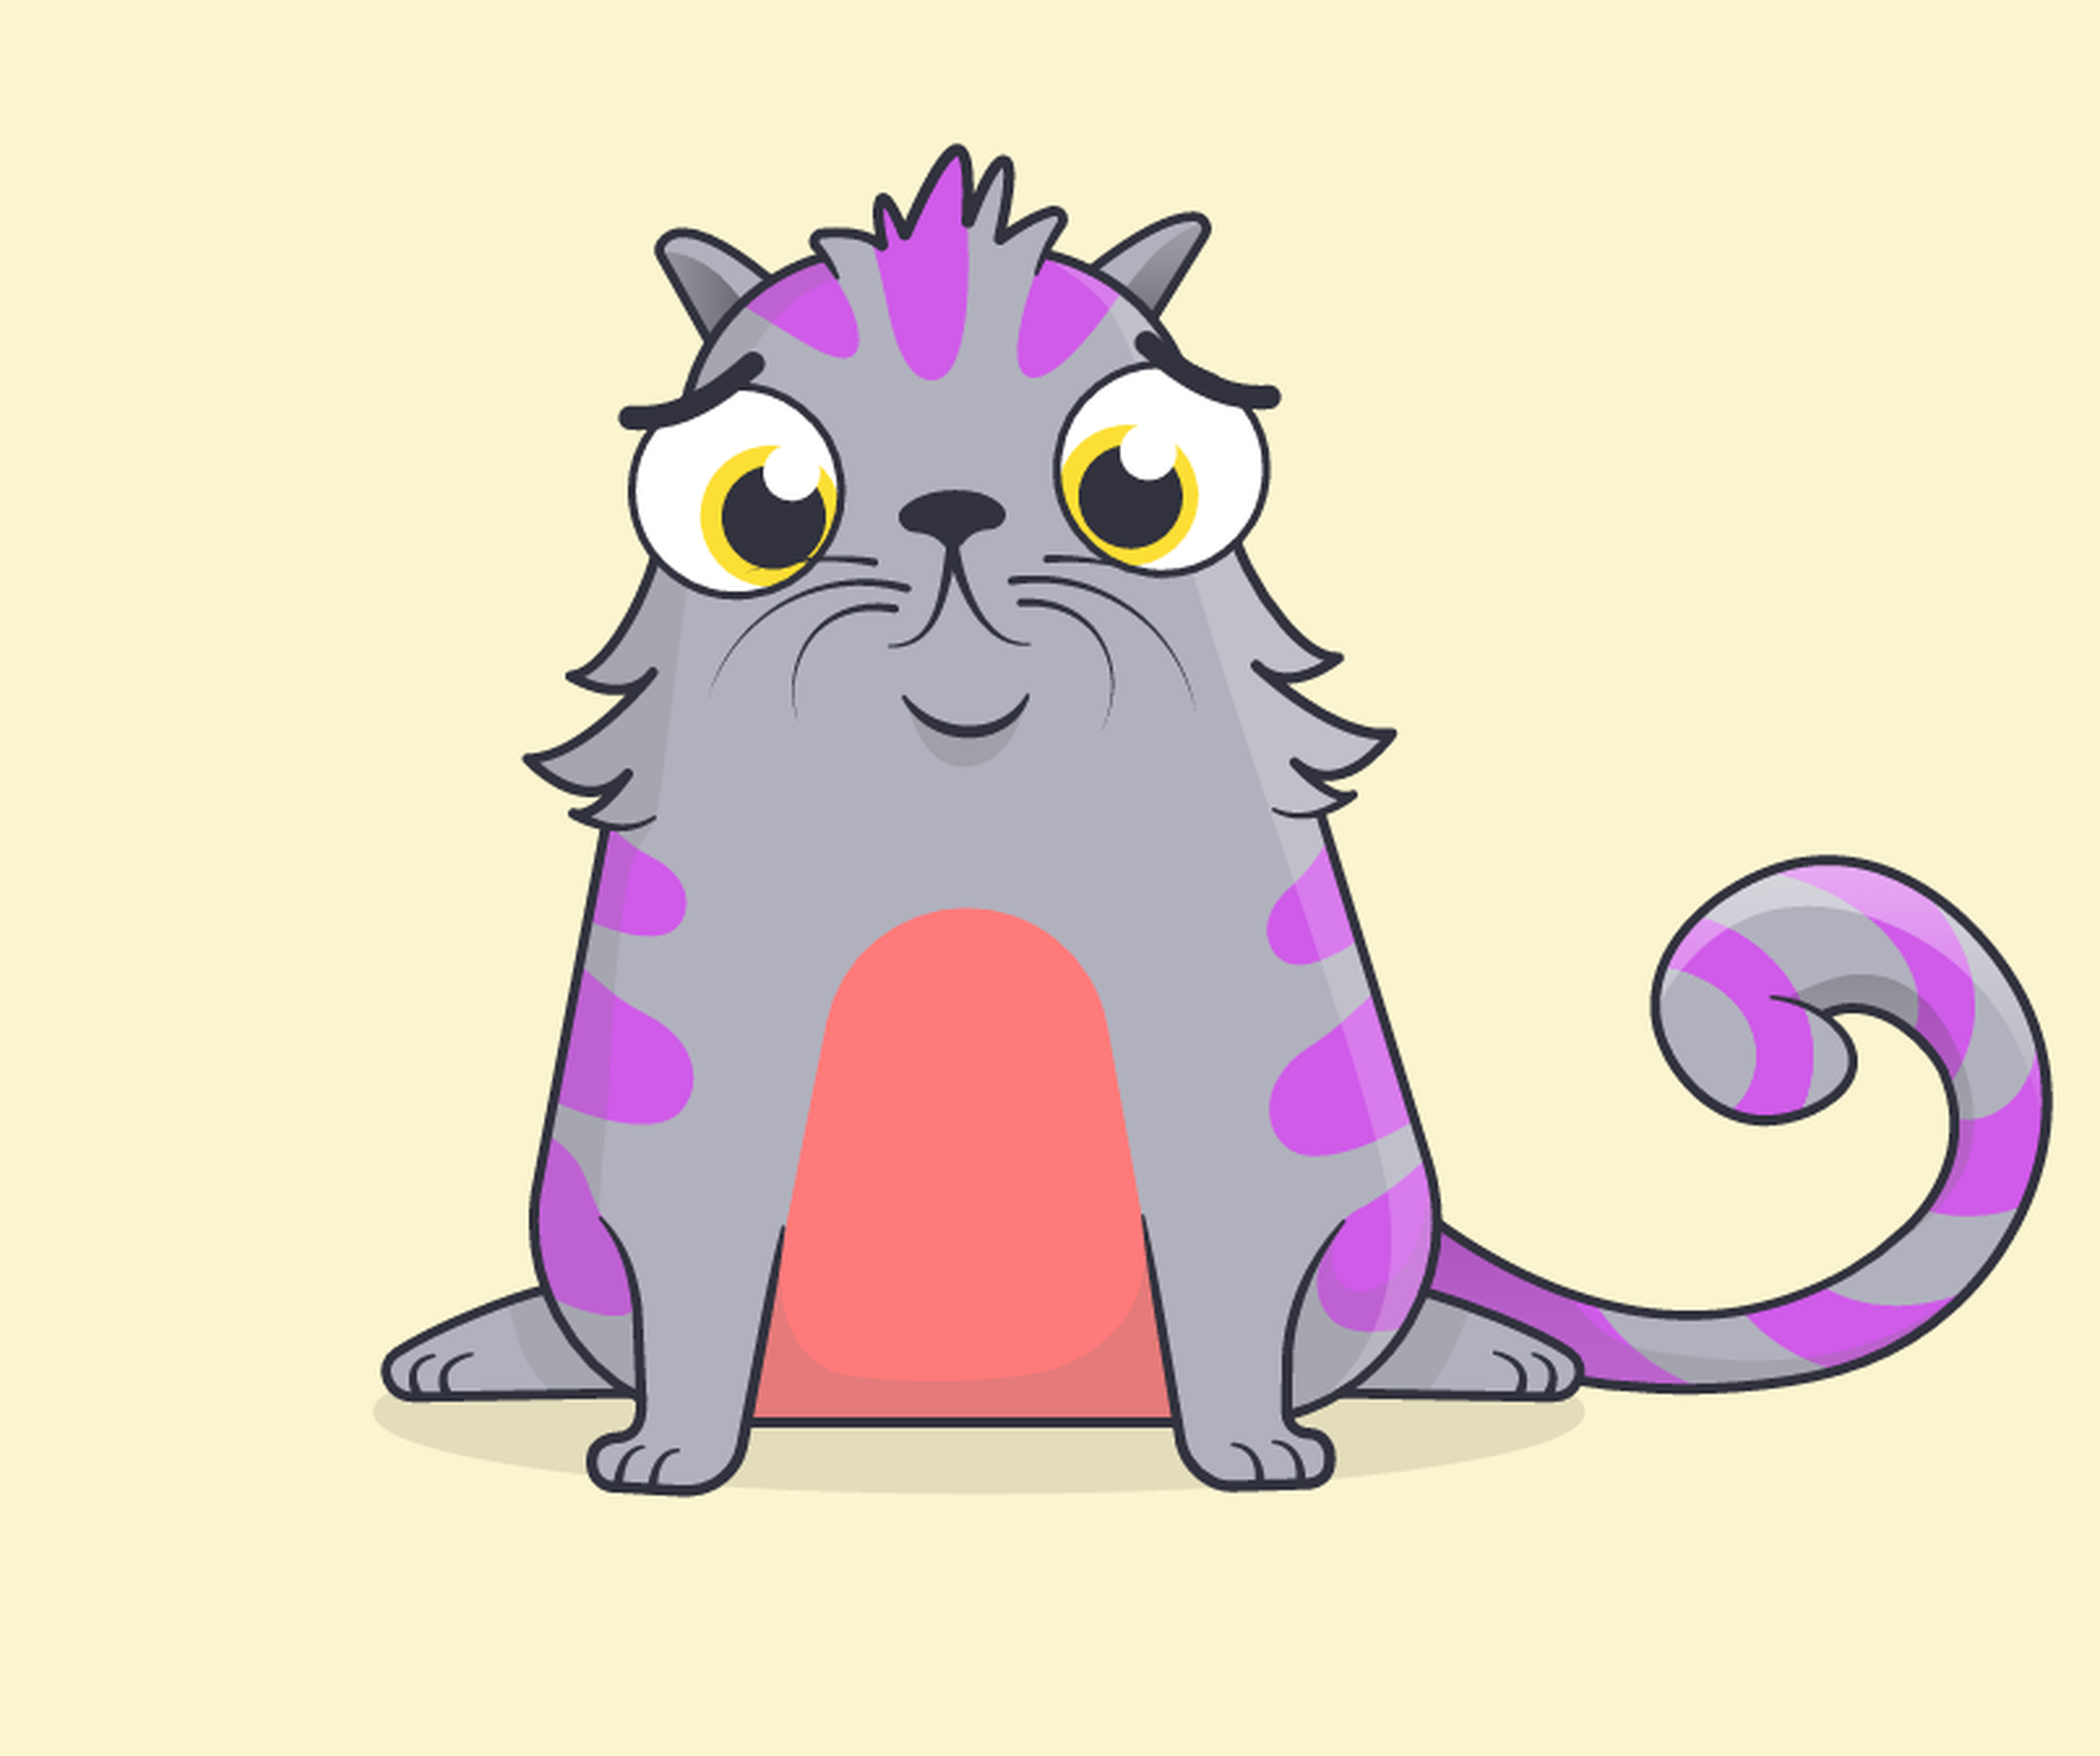 Imagen del juego de gatos virtuales Cryptokitties